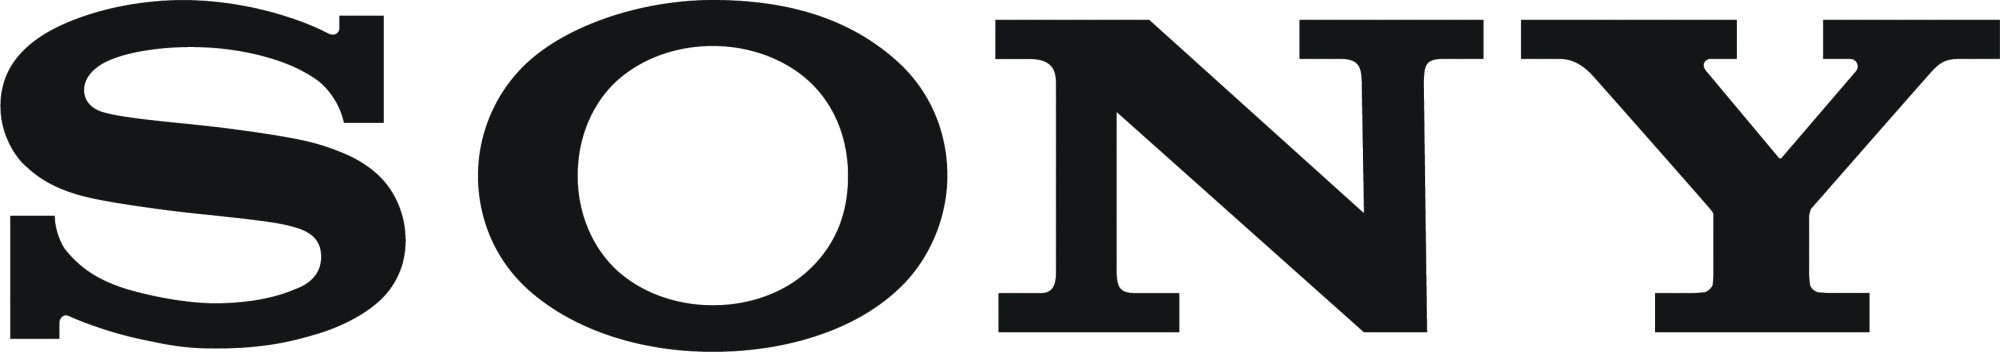 Sony logo 1000x1000px